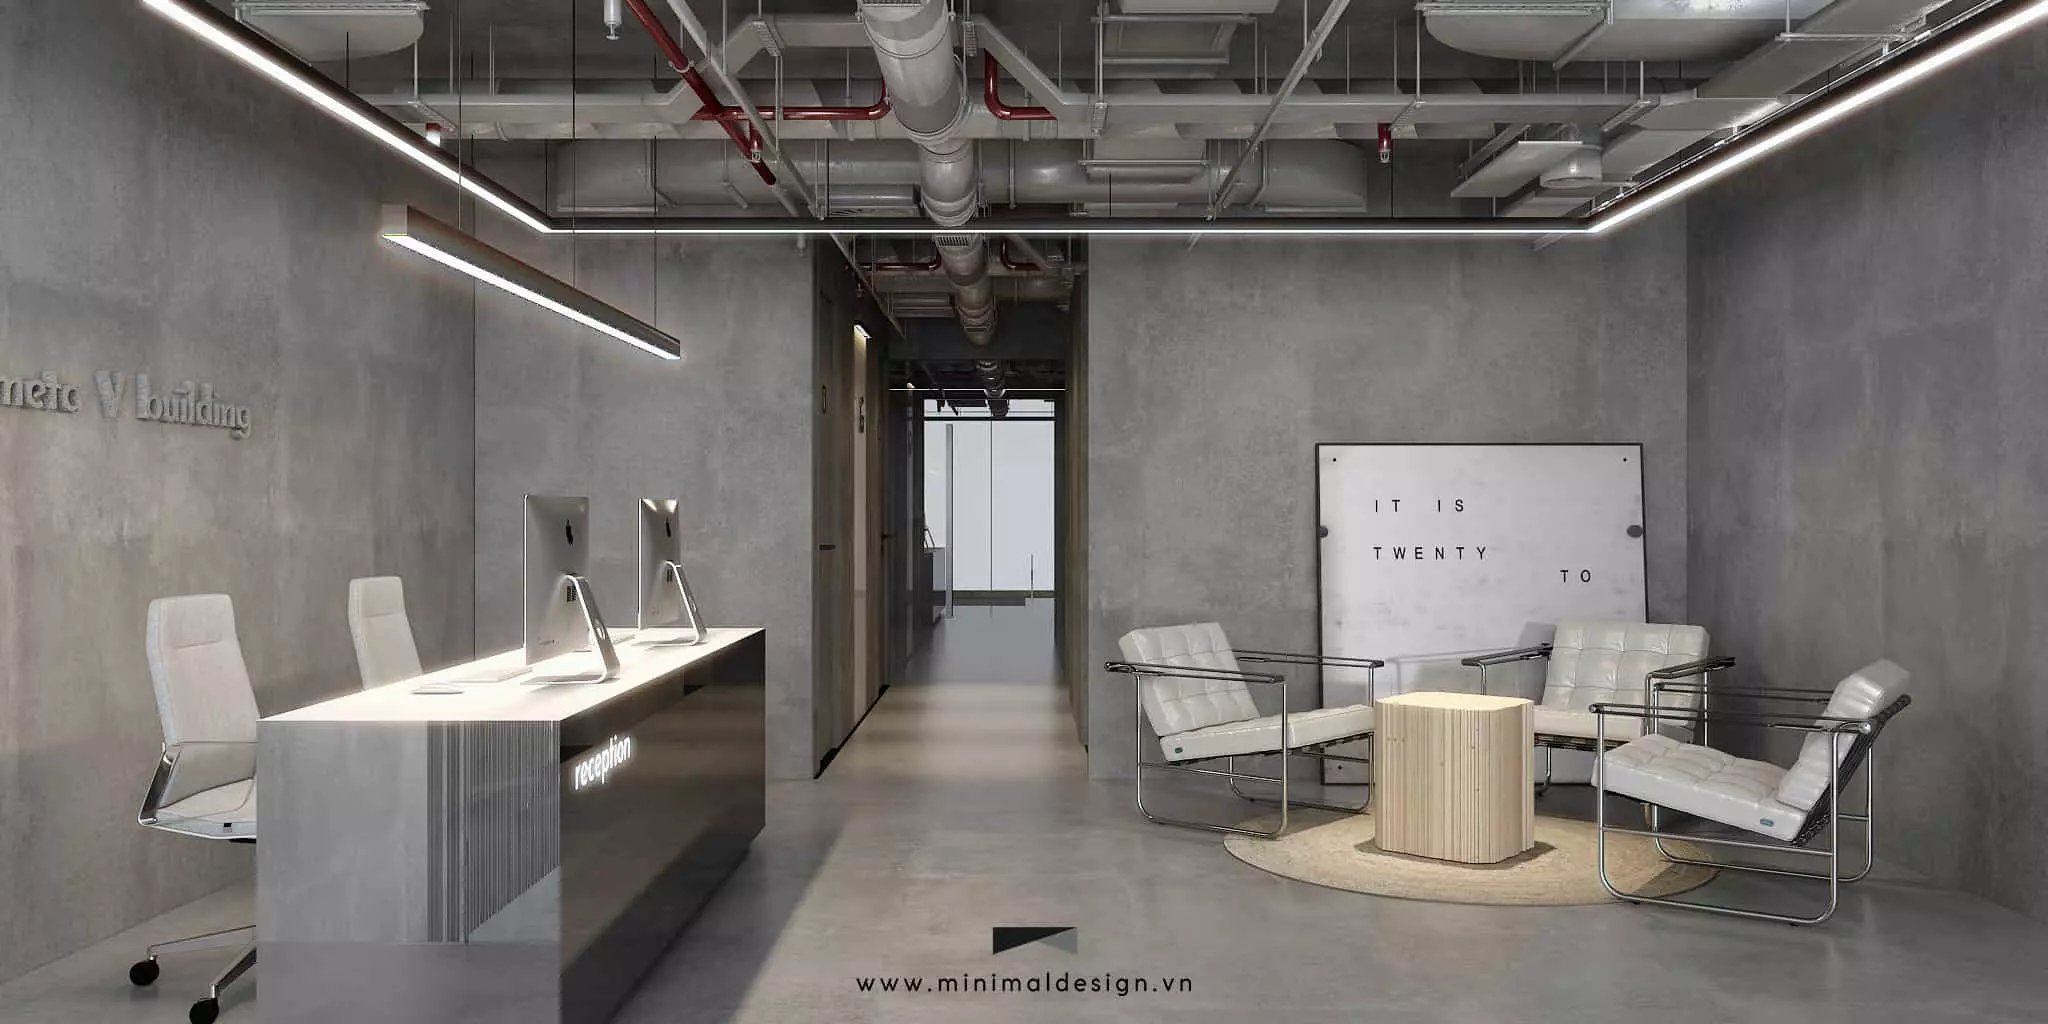 Thiết kế nội thất văn phòng tối giản mang đến một không gian làm việc kiểu mới giúp cân bằng giữa thư giãn và tiện ích, công năng của văn phòng.